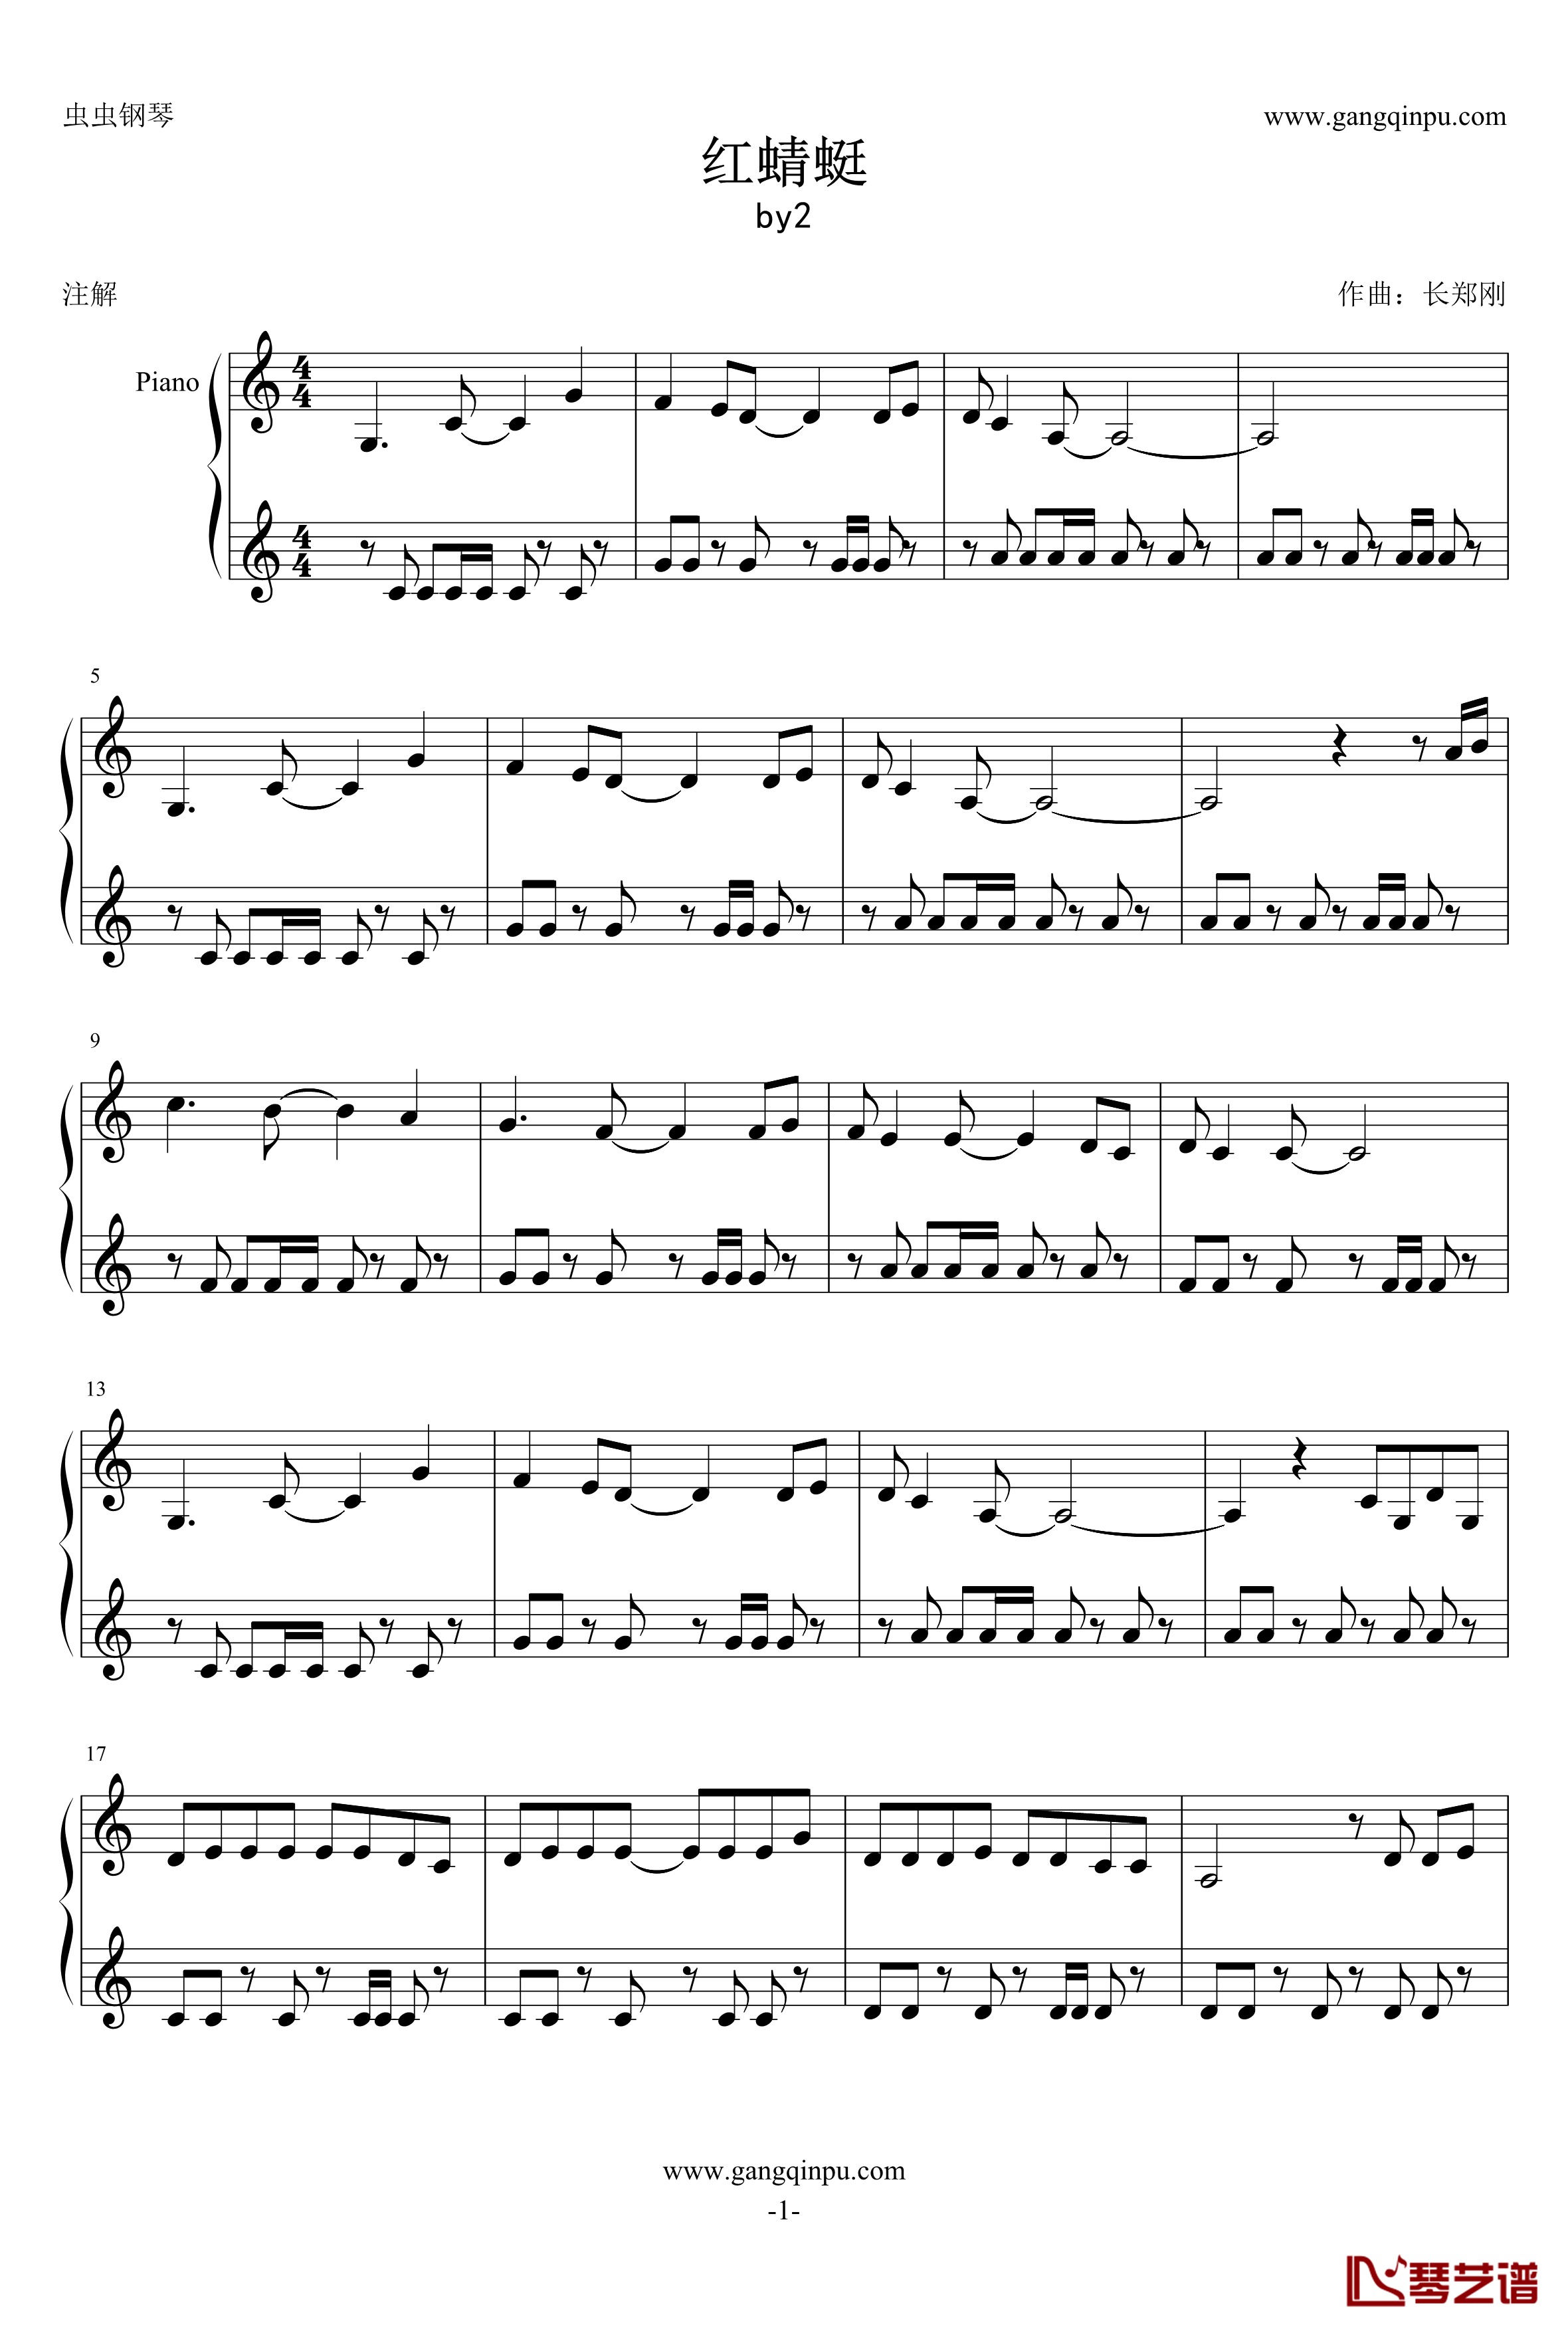 红蜻蜓钢琴谱-by21